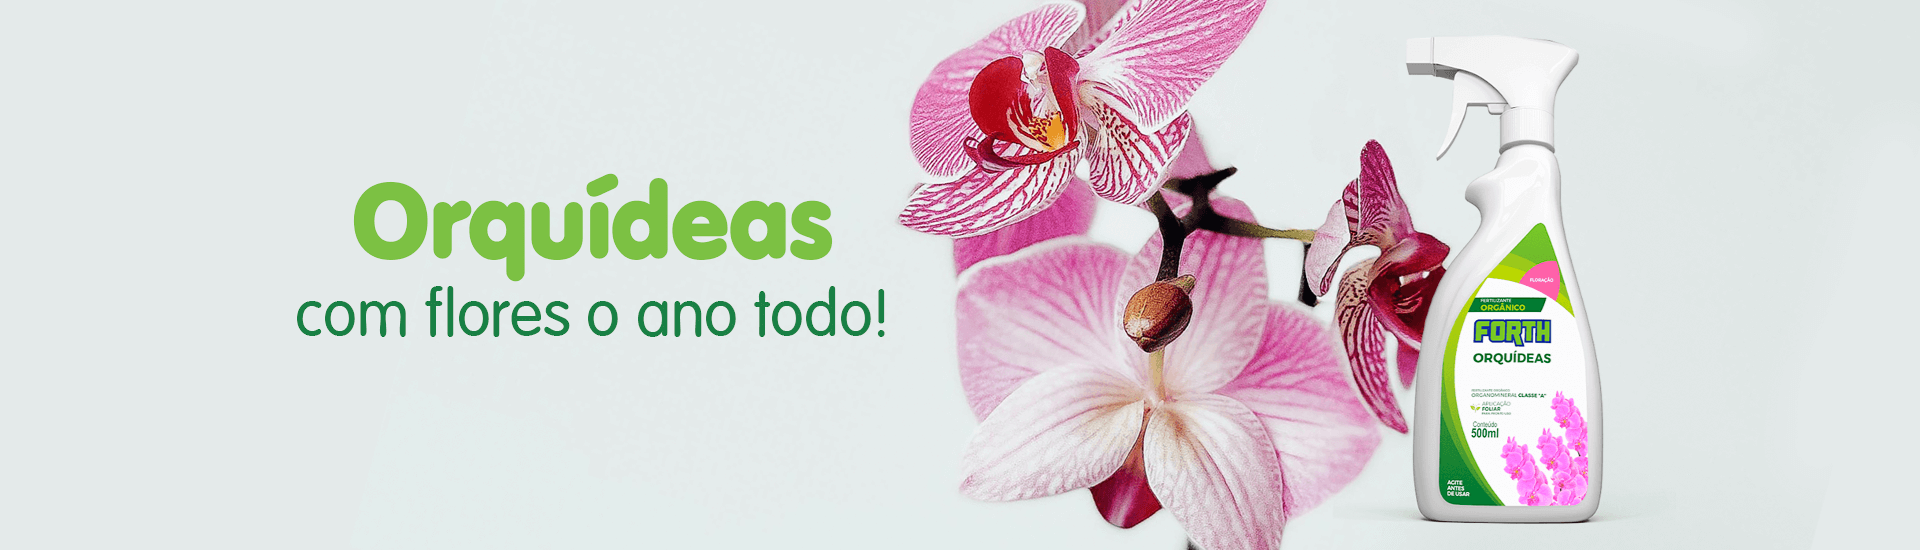 Banner Orquídeas